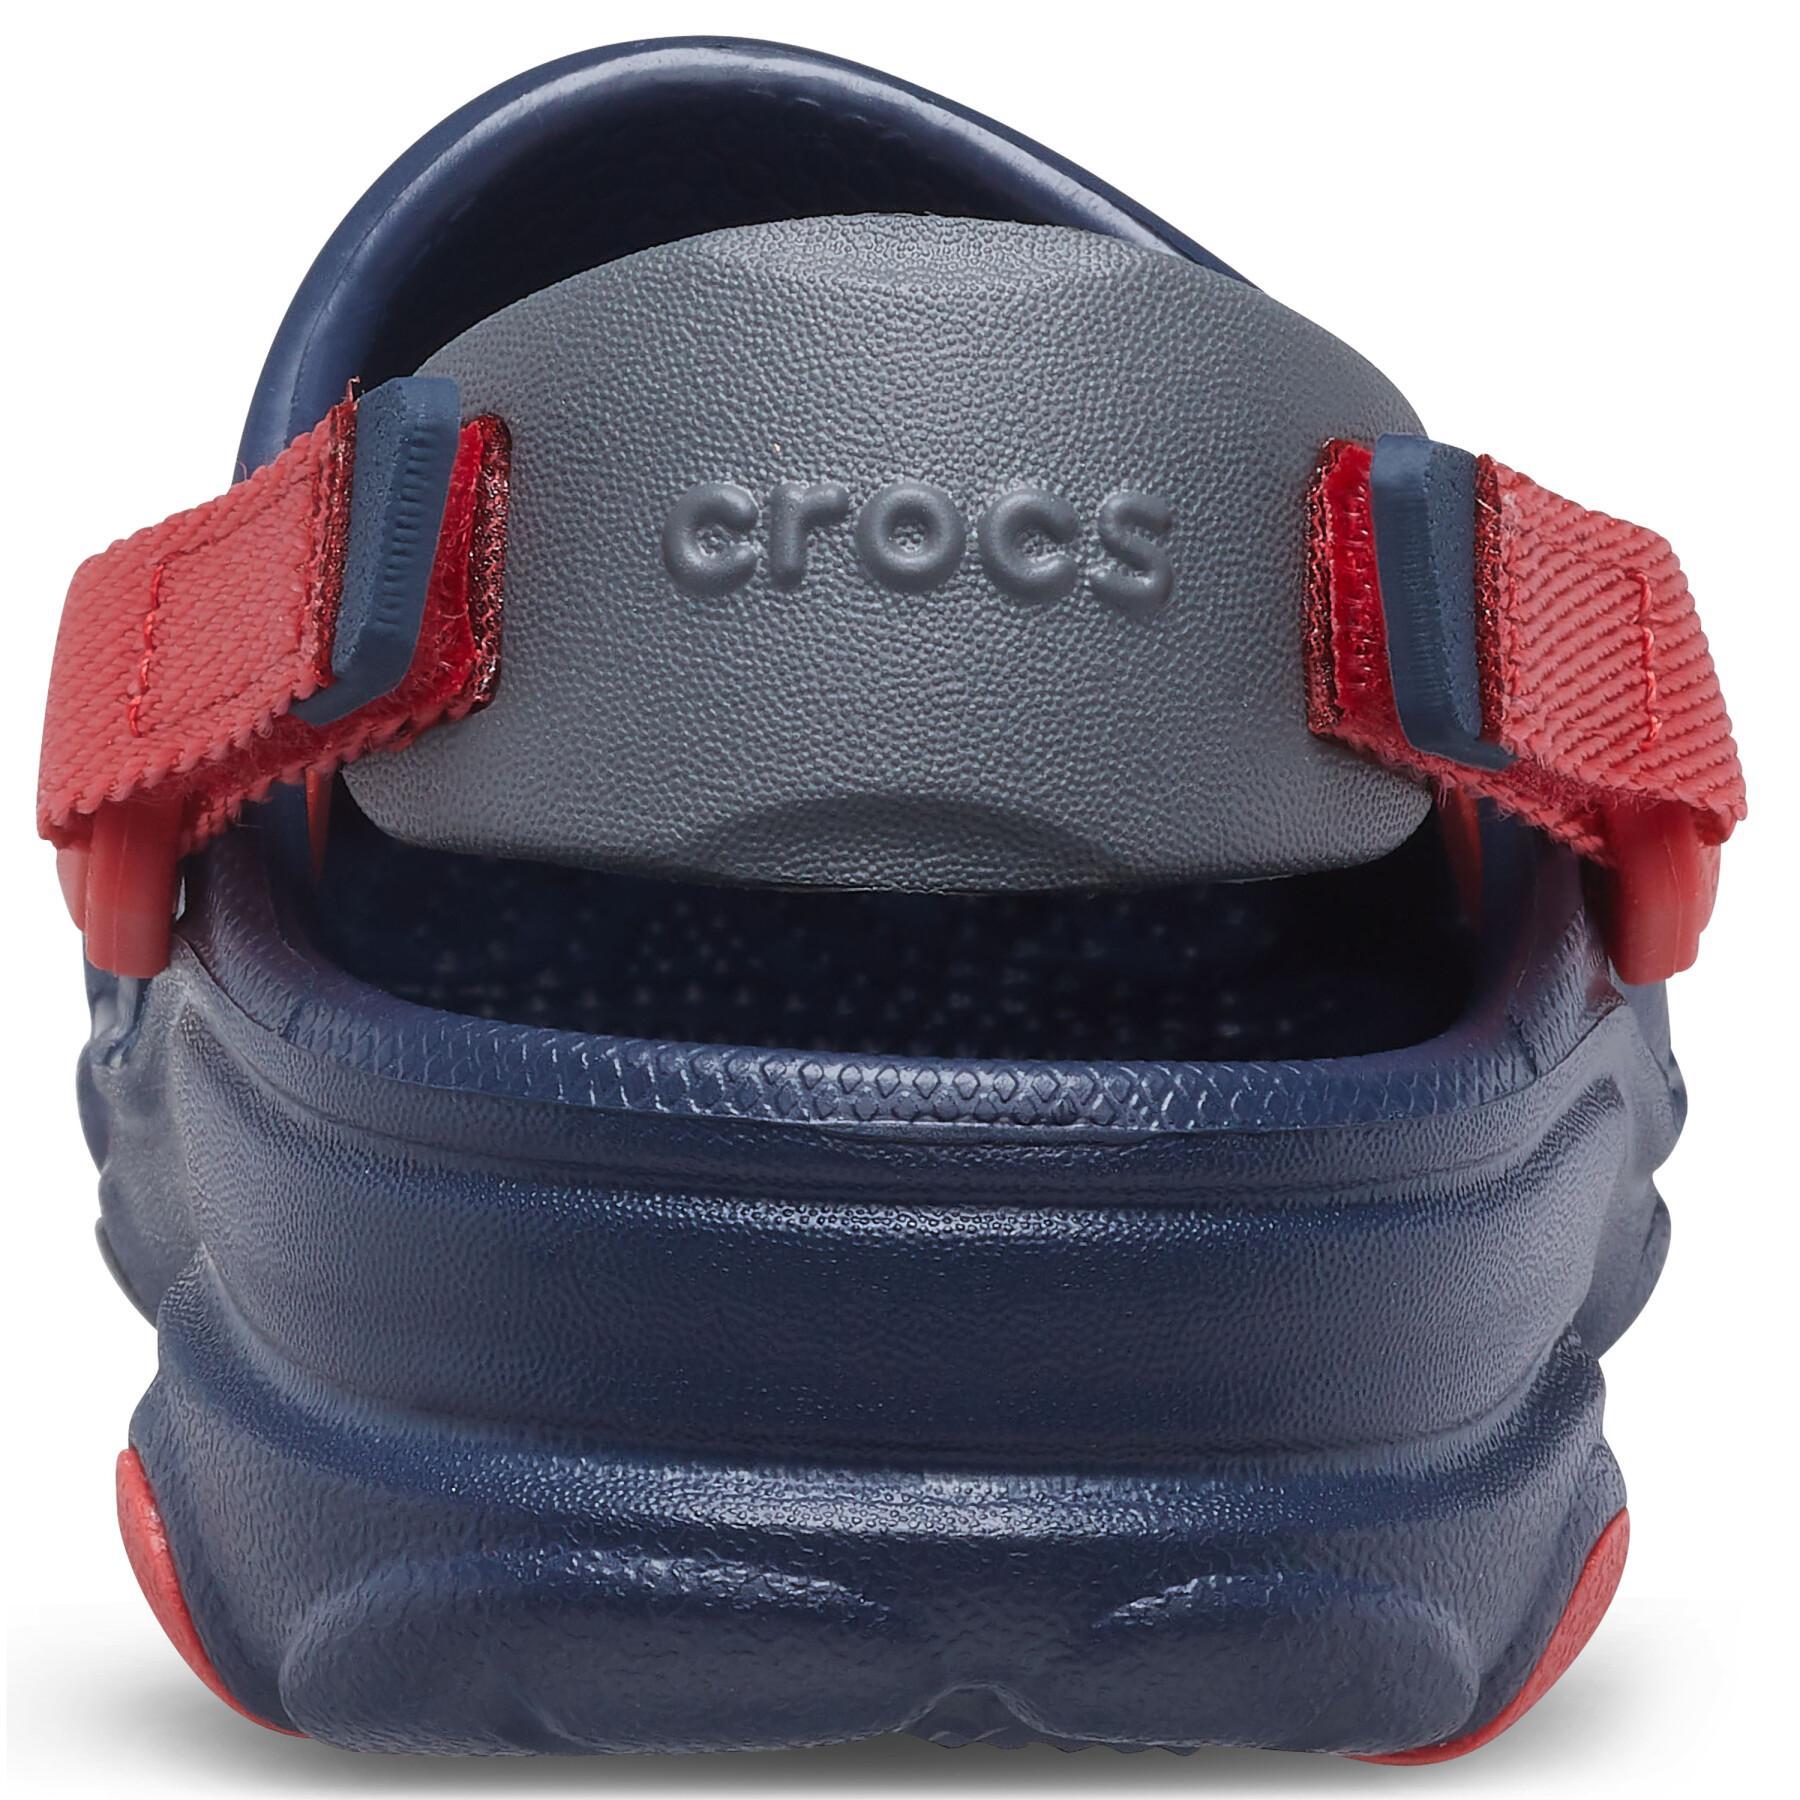 All-terrain baby clogs Crocs Classics T